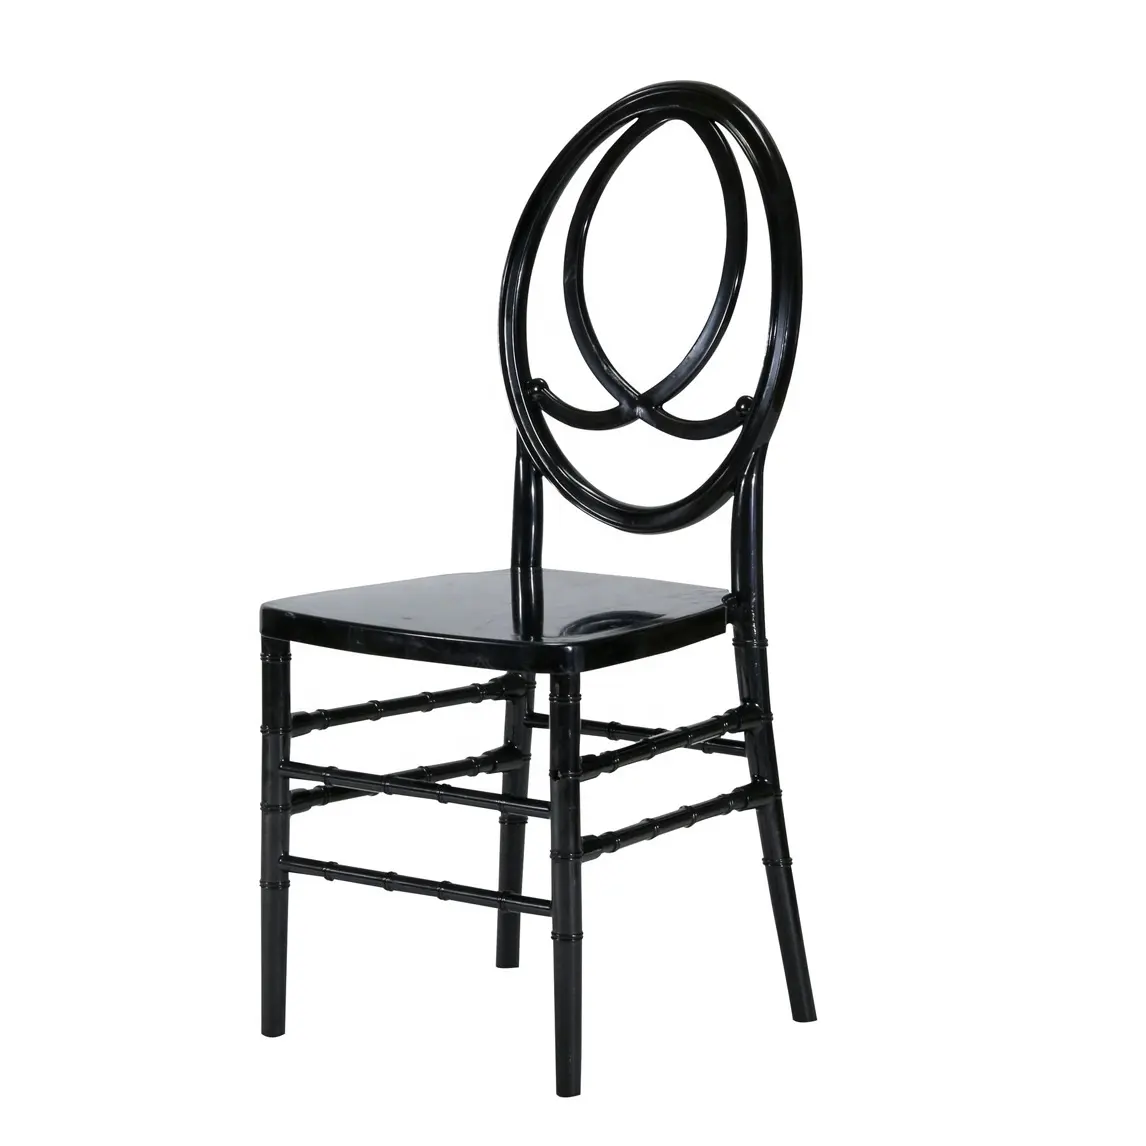 완벽한 품질 블랙 수지 플라스틱 이벤트 스택 웨딩 연회 티파니 타원형 피닉스 의자